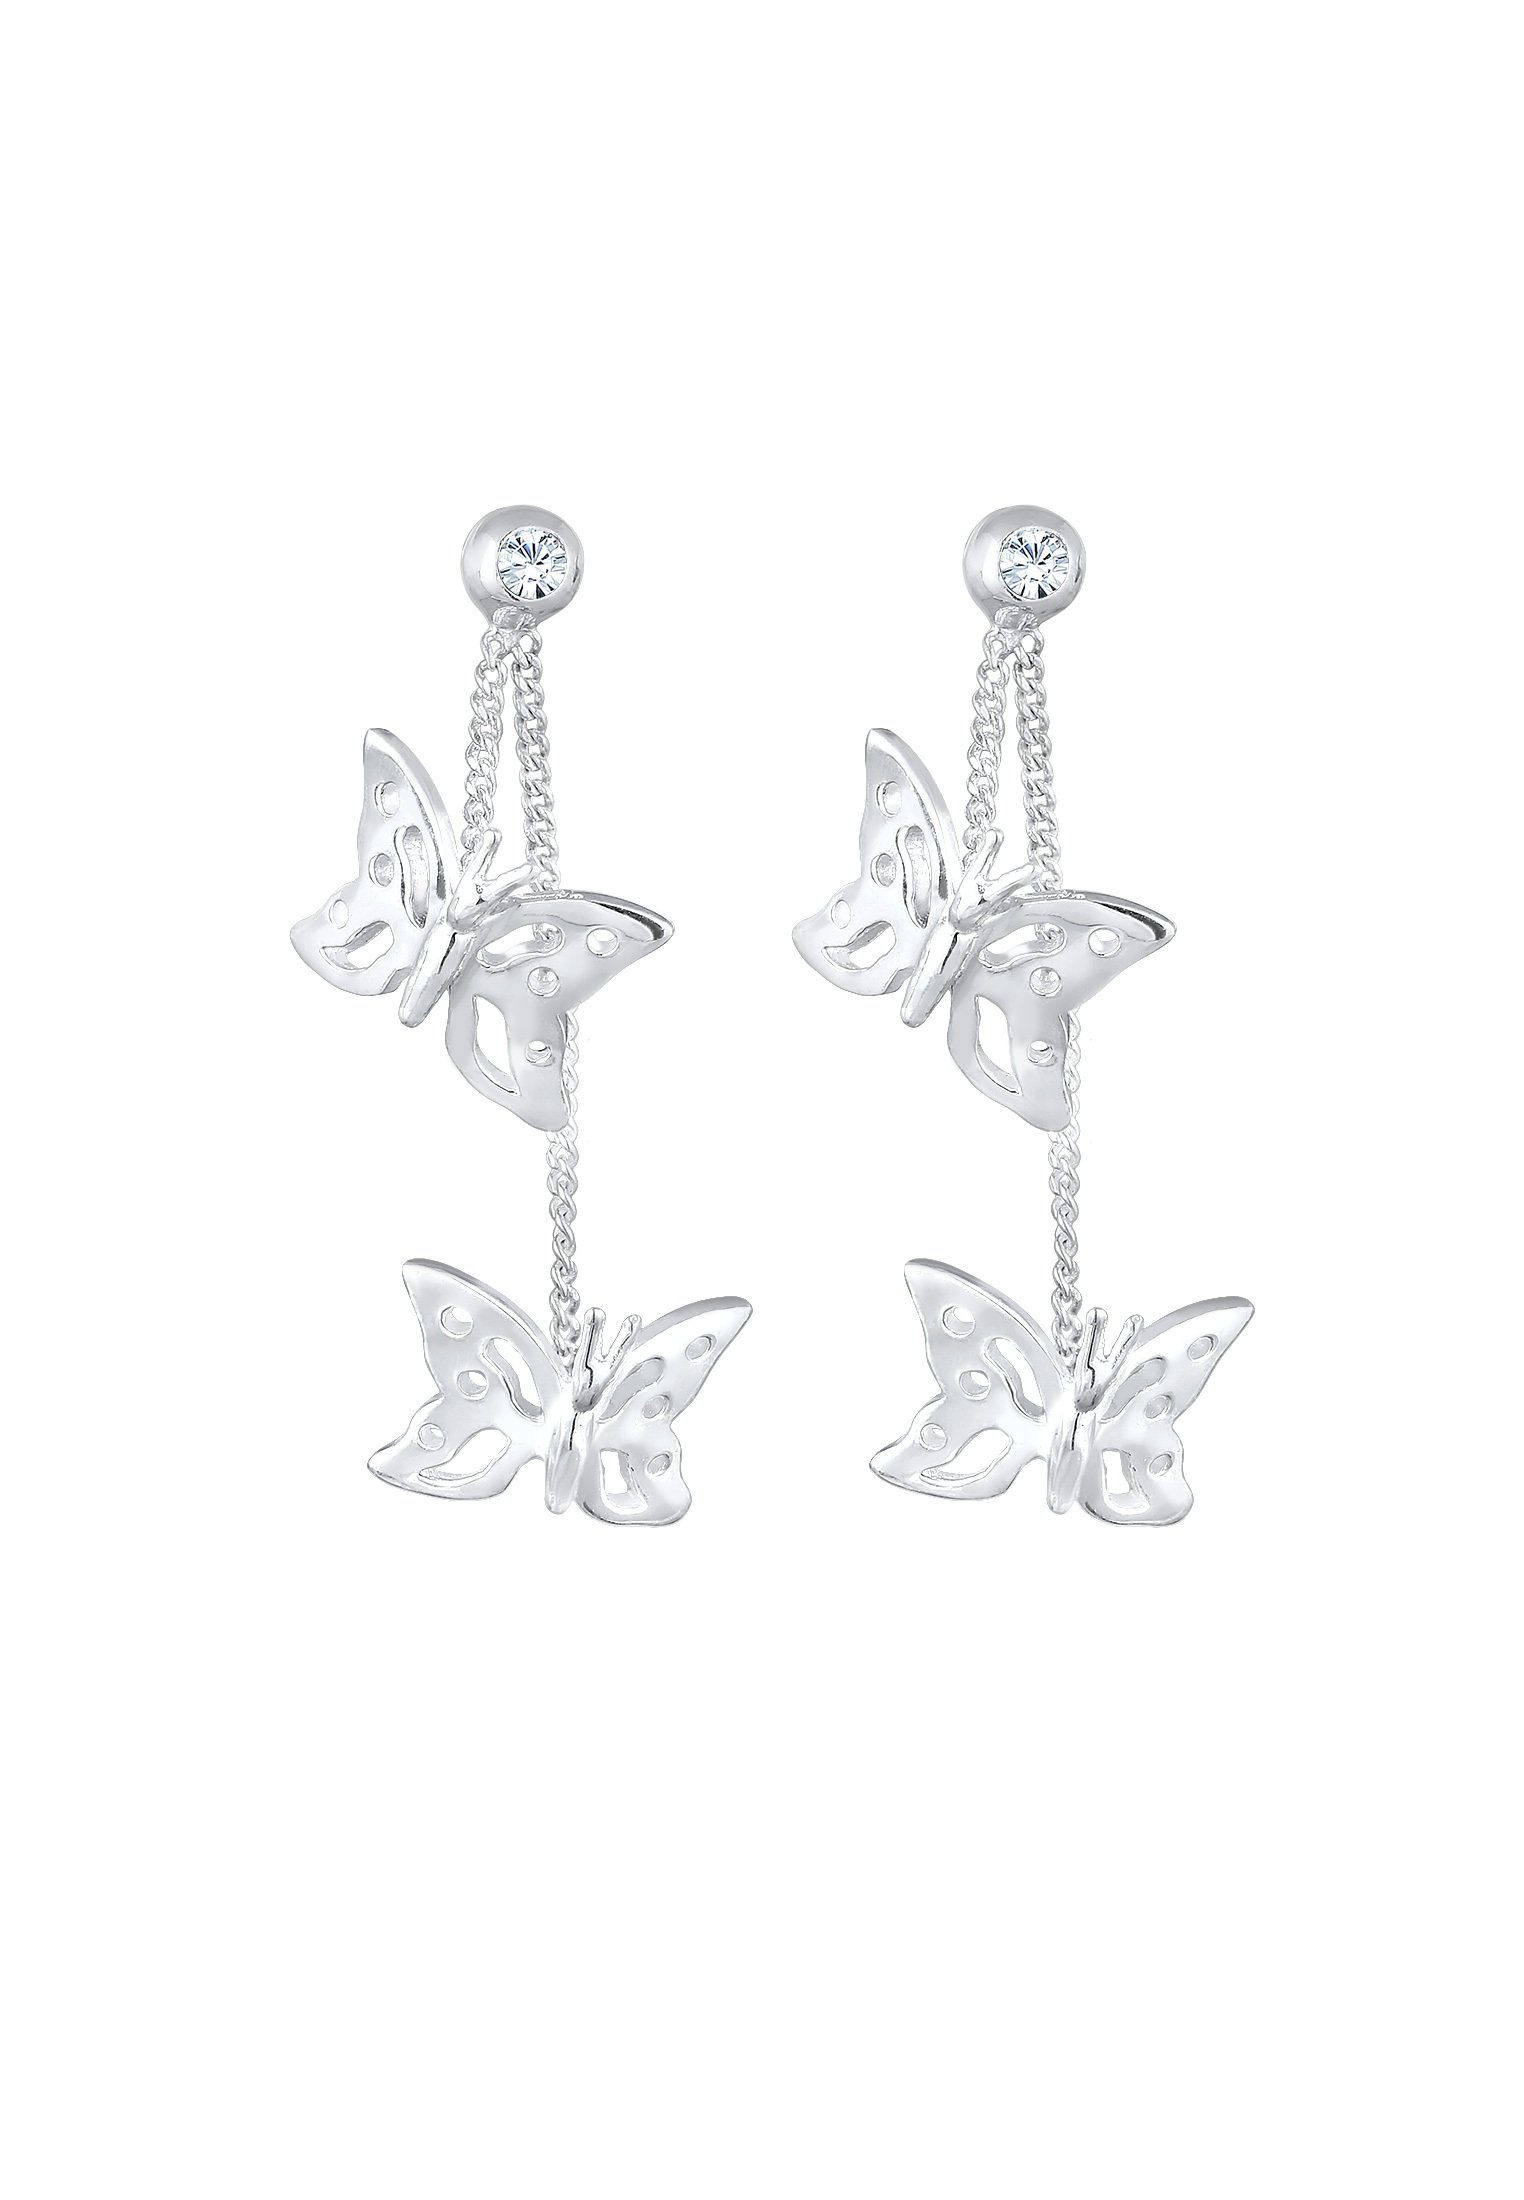 Elli Paar Ohrhänger Natur Schmetterling Schmetterling Silber Weiß Kristalle 925